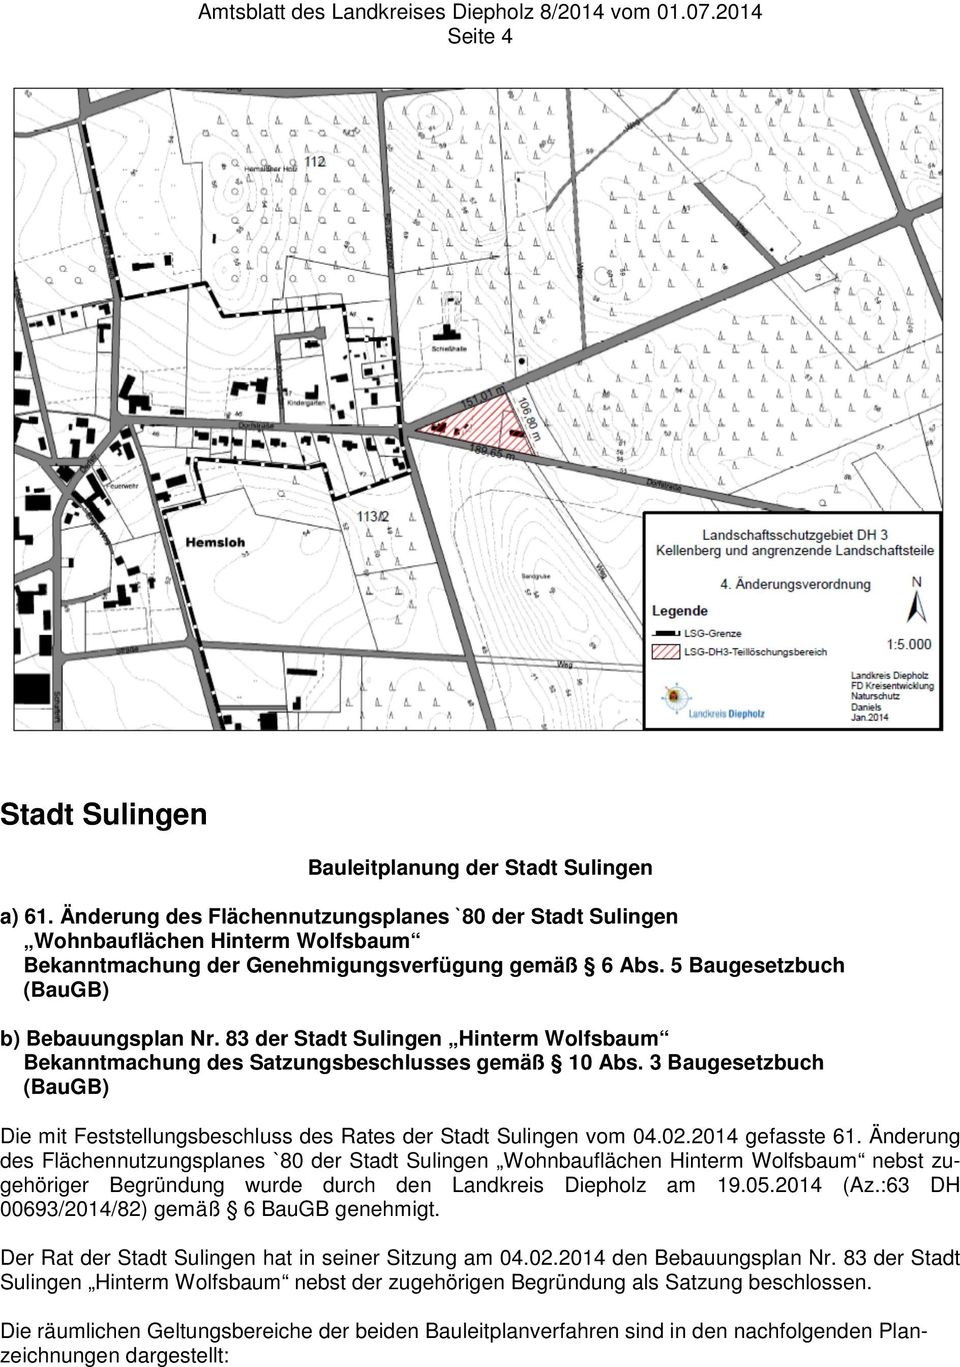 83 der Stadt Sulingen Hinterm Wolfsbaum Bekanntmachung des Satzungsbeschlusses gemäß 10 Abs. 3 Baugesetzbuch (BauGB) Die mit Feststellungsbeschluss des Rates der Stadt Sulingen vom 04.02.